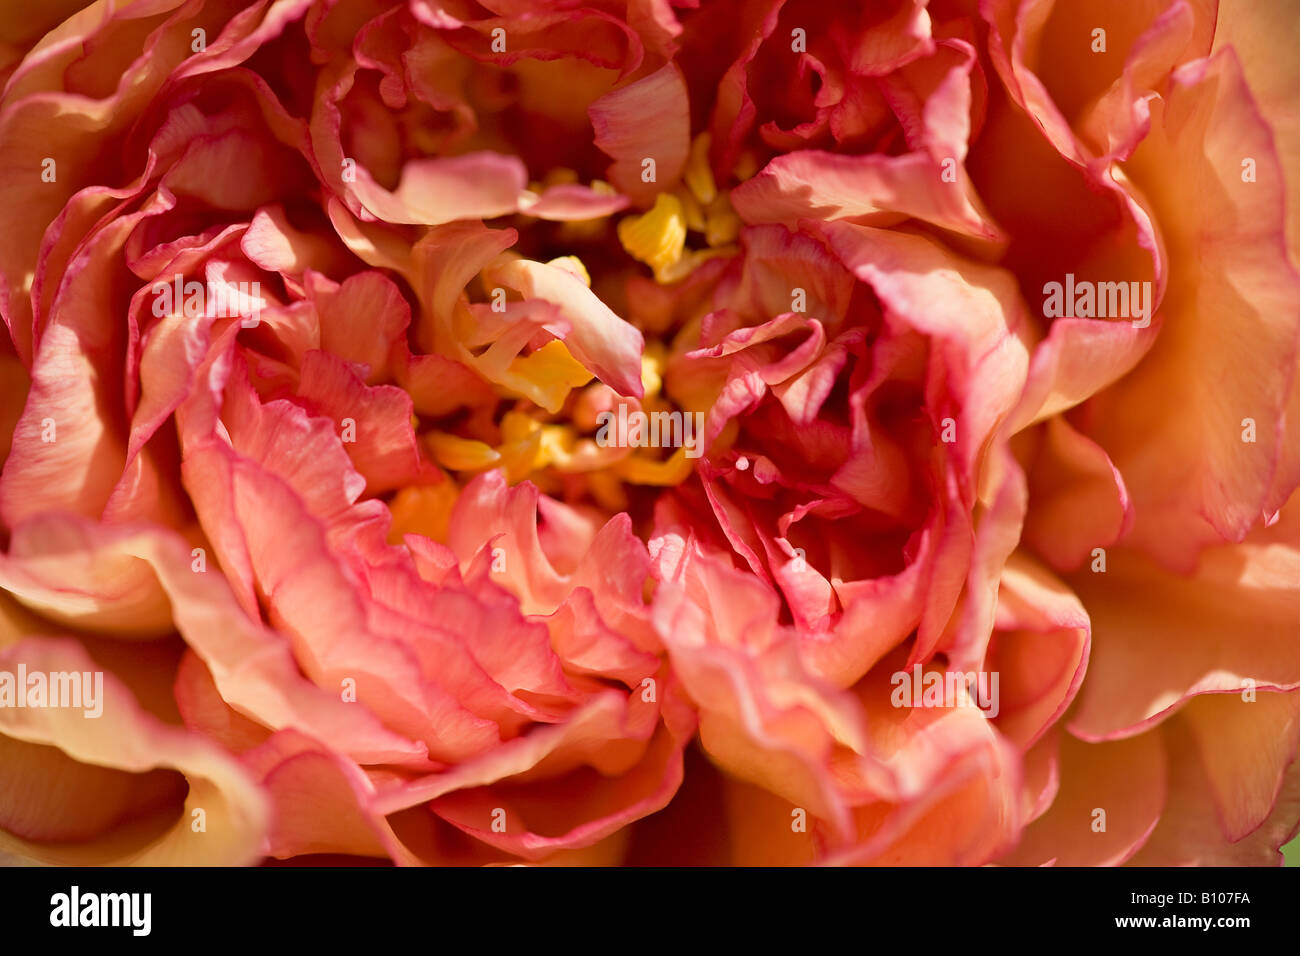 Gros plan sur la fleur de pivoine « souvenir de Maxime Cornu » en fleur au printemps, West Sussex, Angleterre, Royaume-Uni Banque D'Images